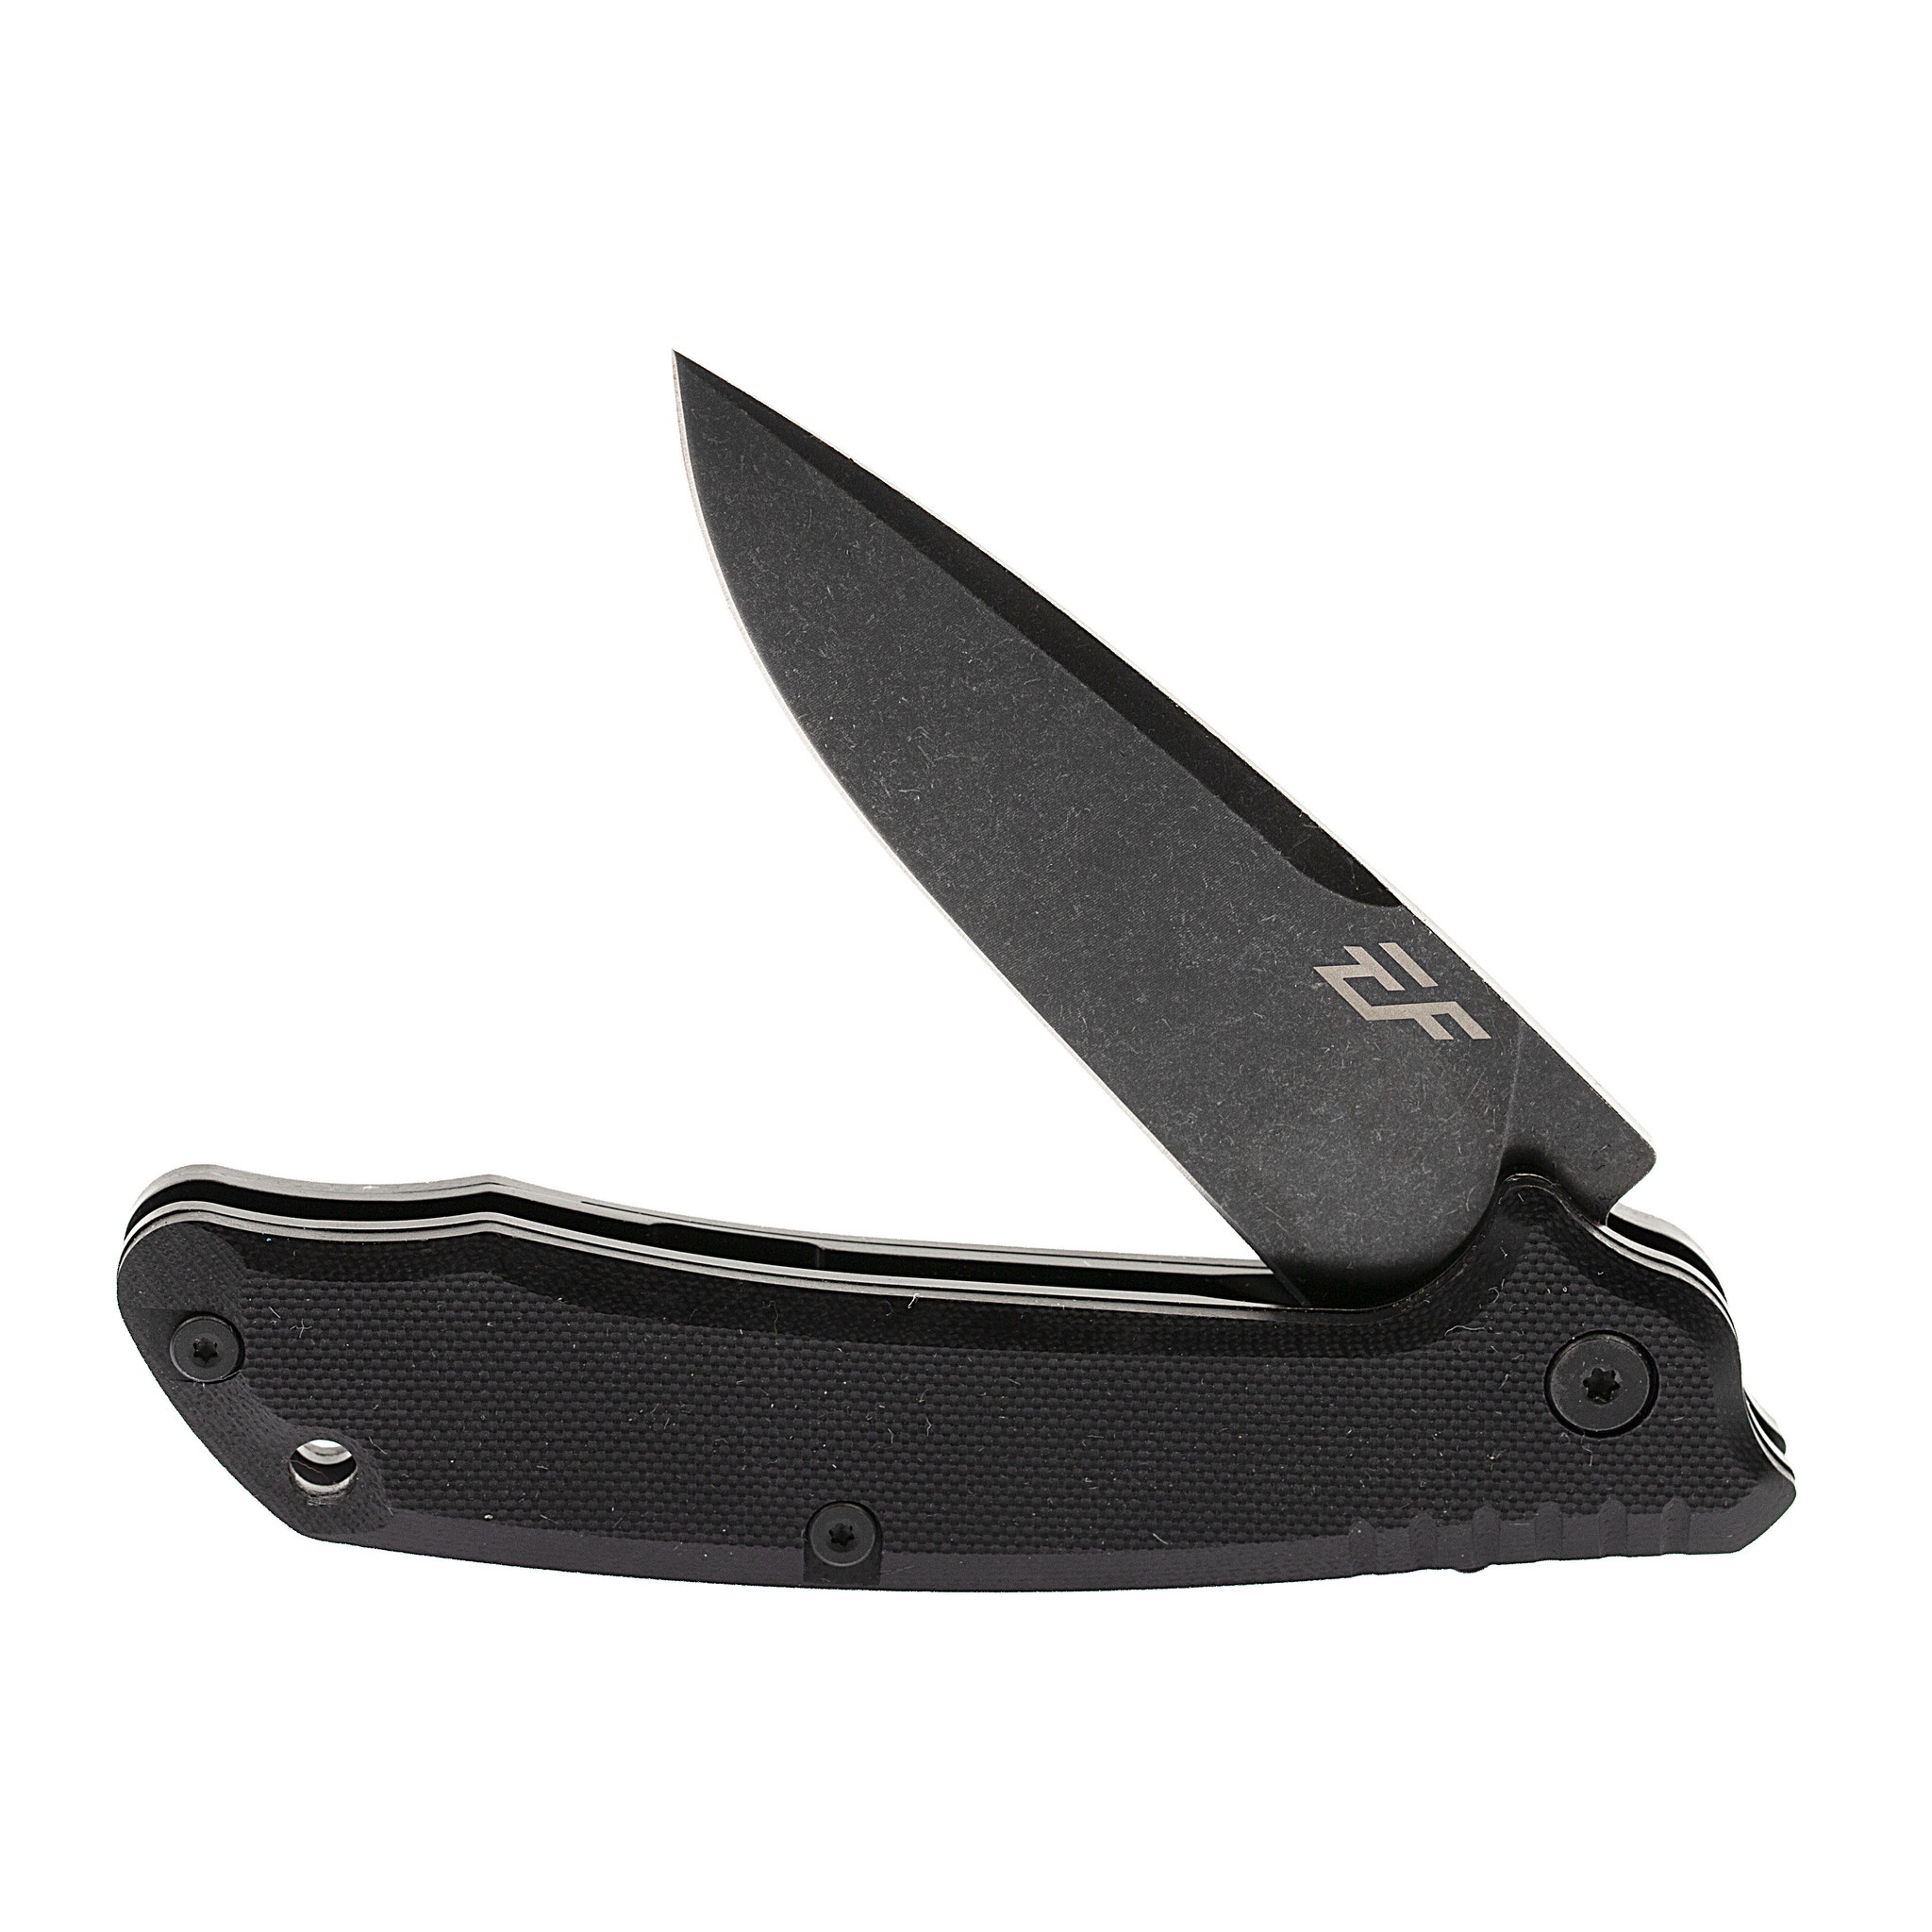 Складной нож Eafengrow EF223 Black, сталь D2, рукоять G10 от Ножиков